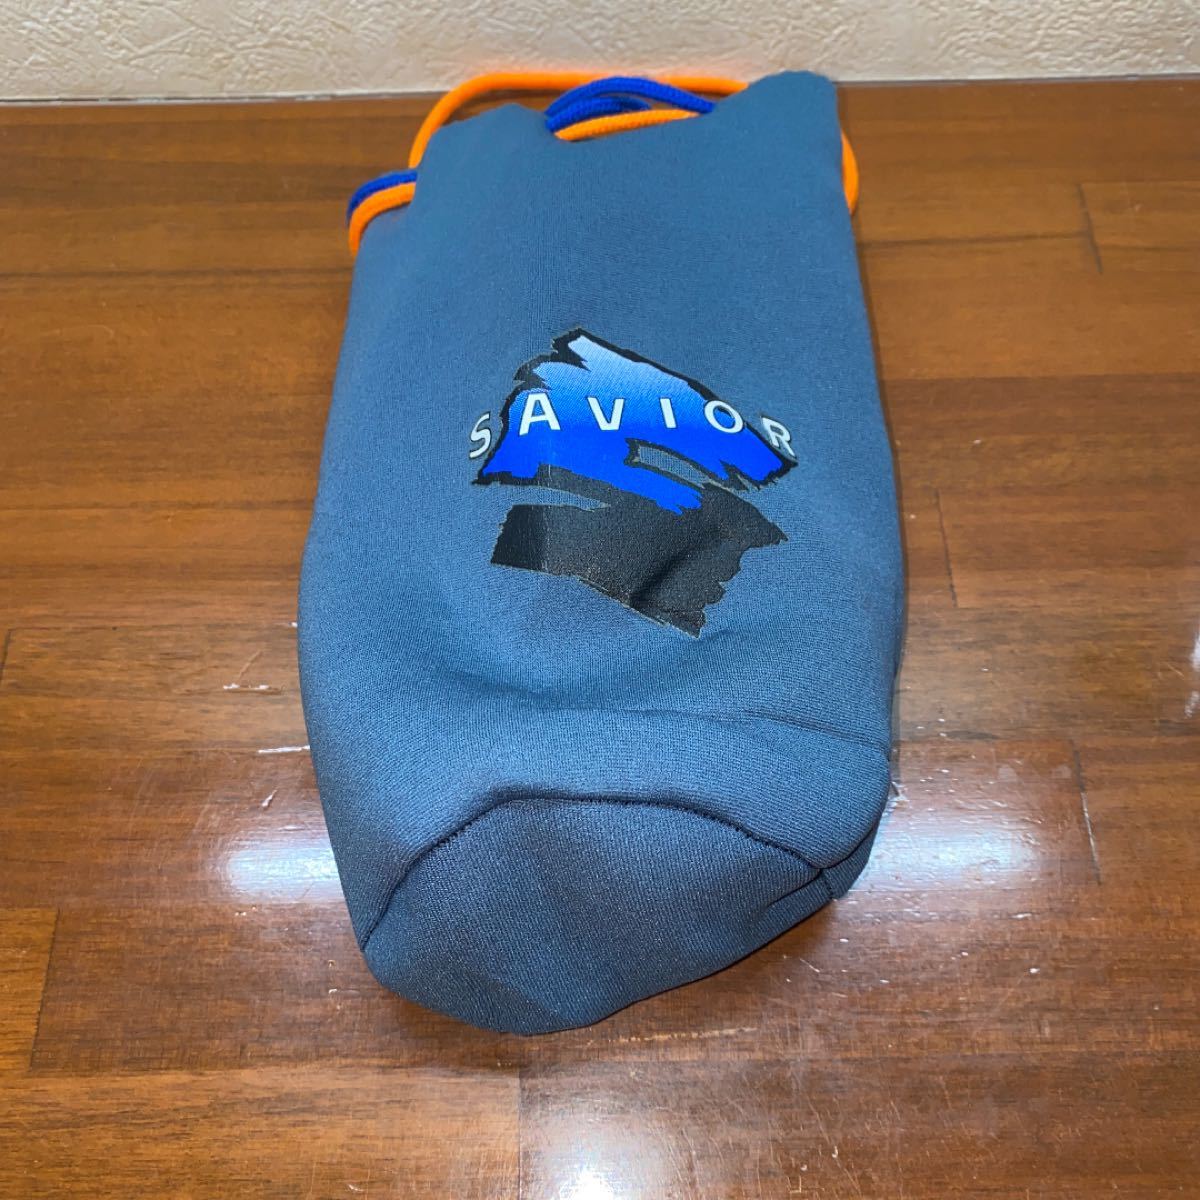 ダイビング  SAVIOR ネオプレーン製小物ポーチ 巾着袋 Φ10×20cm